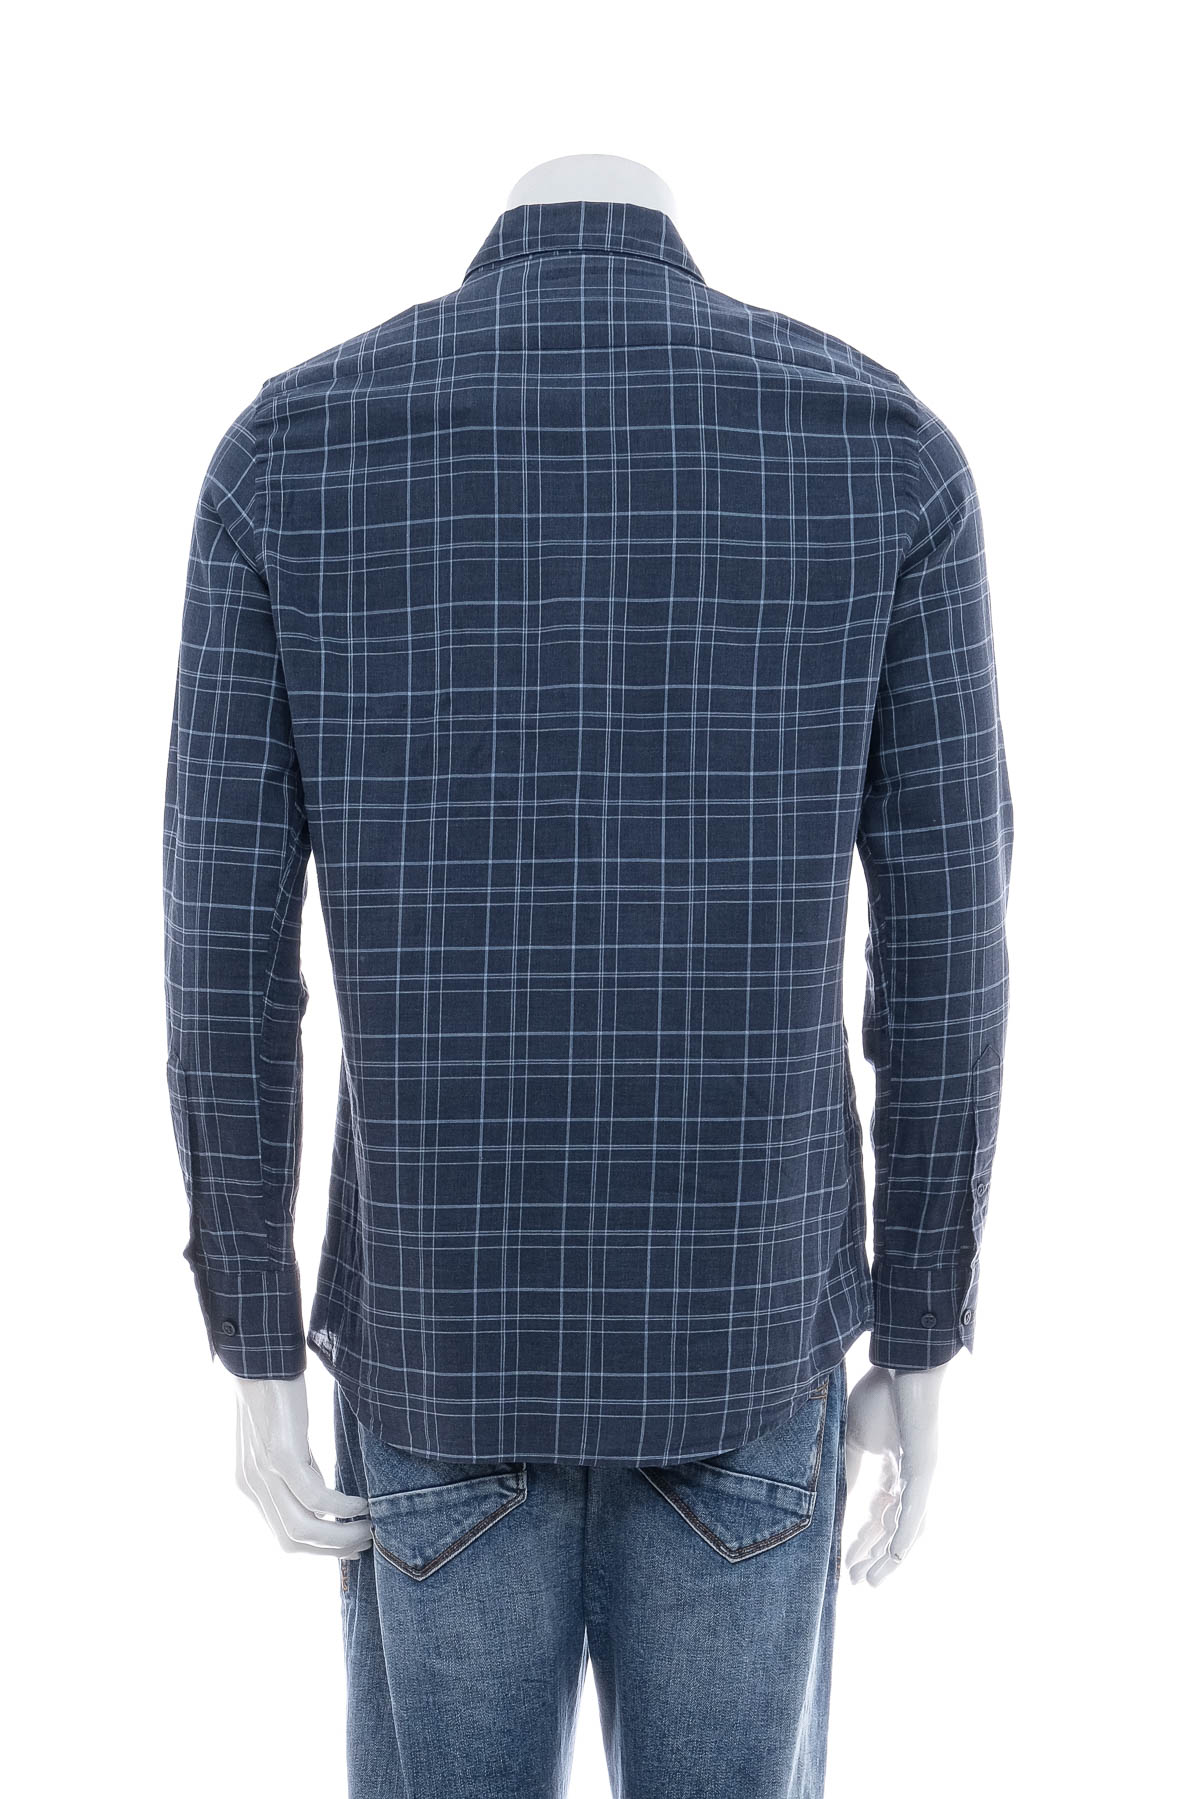 Ανδρικό πουκάμισο - Massimo Dutti - 1